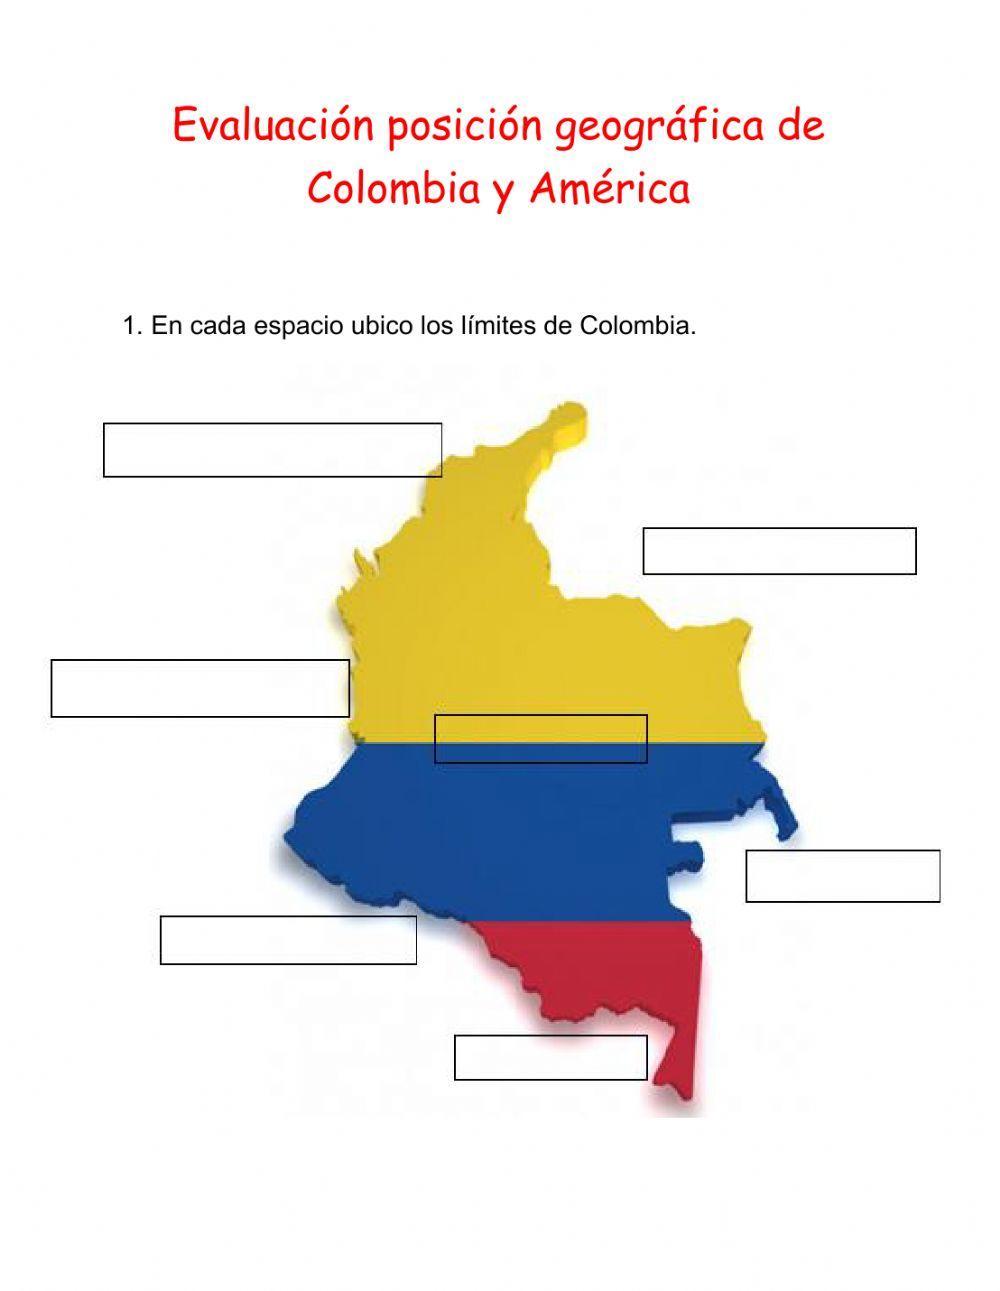 Posición geográfica de Colombia